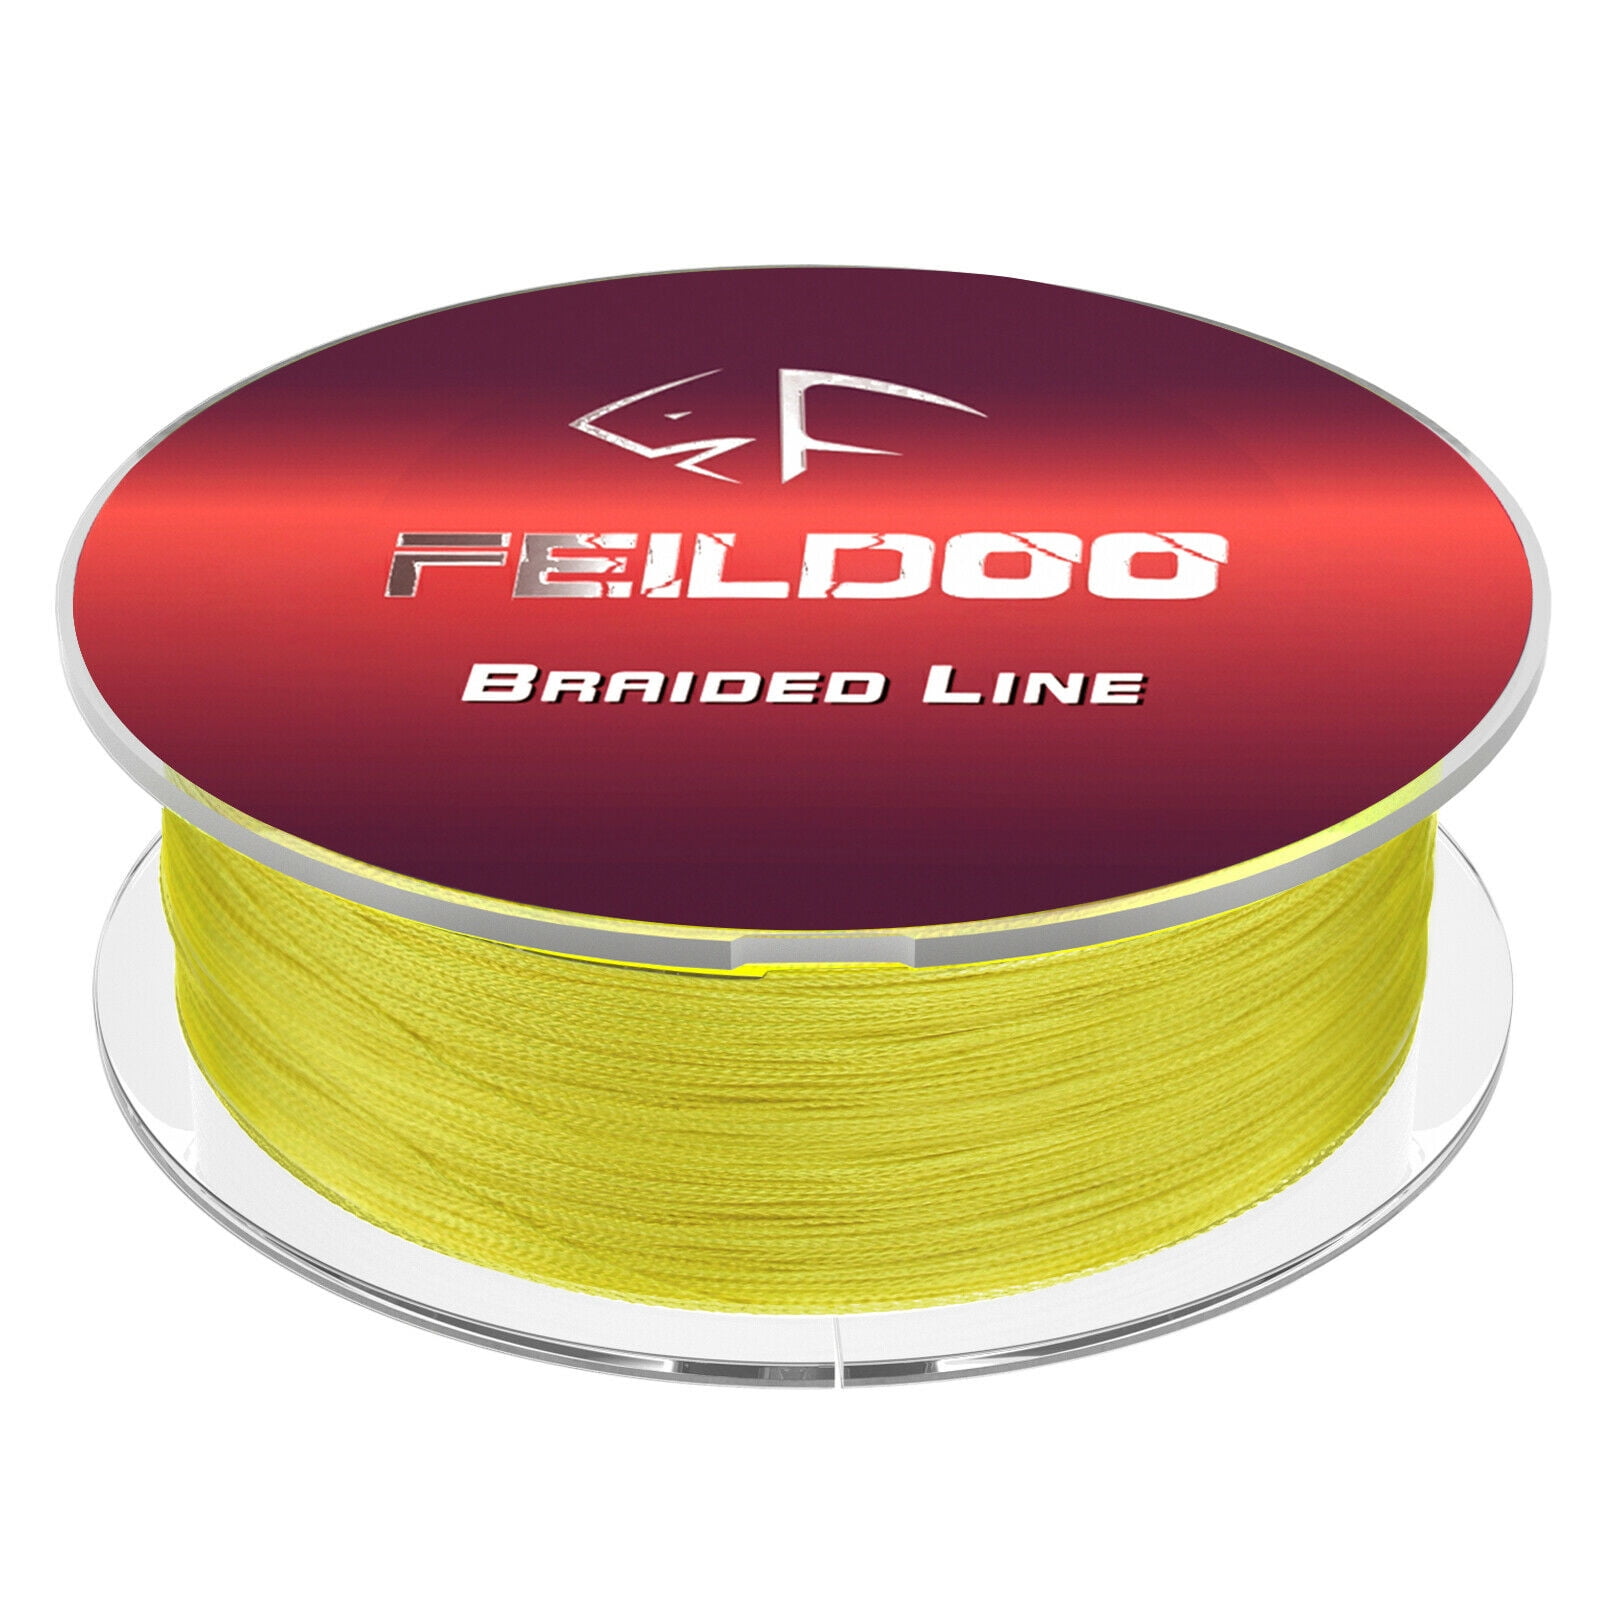 Feildoo Braided Fishing Line,40LB,50LB,60LB,80LB,Yellow, Size: 65 lbs